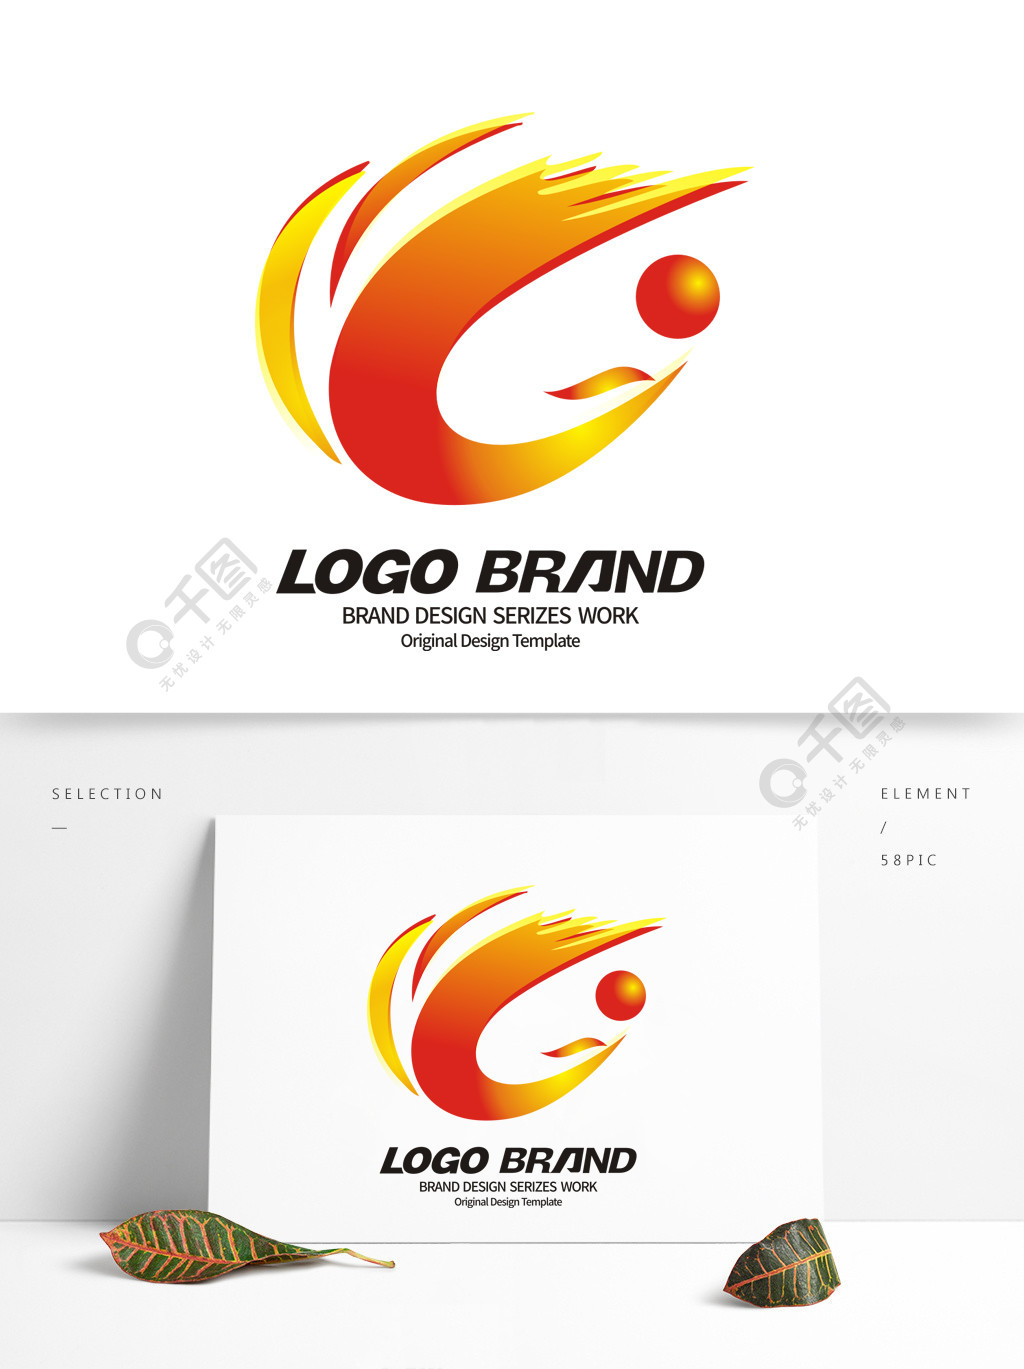 创意红黄凤凰c字母公司logo标志设计矢量图免费下载